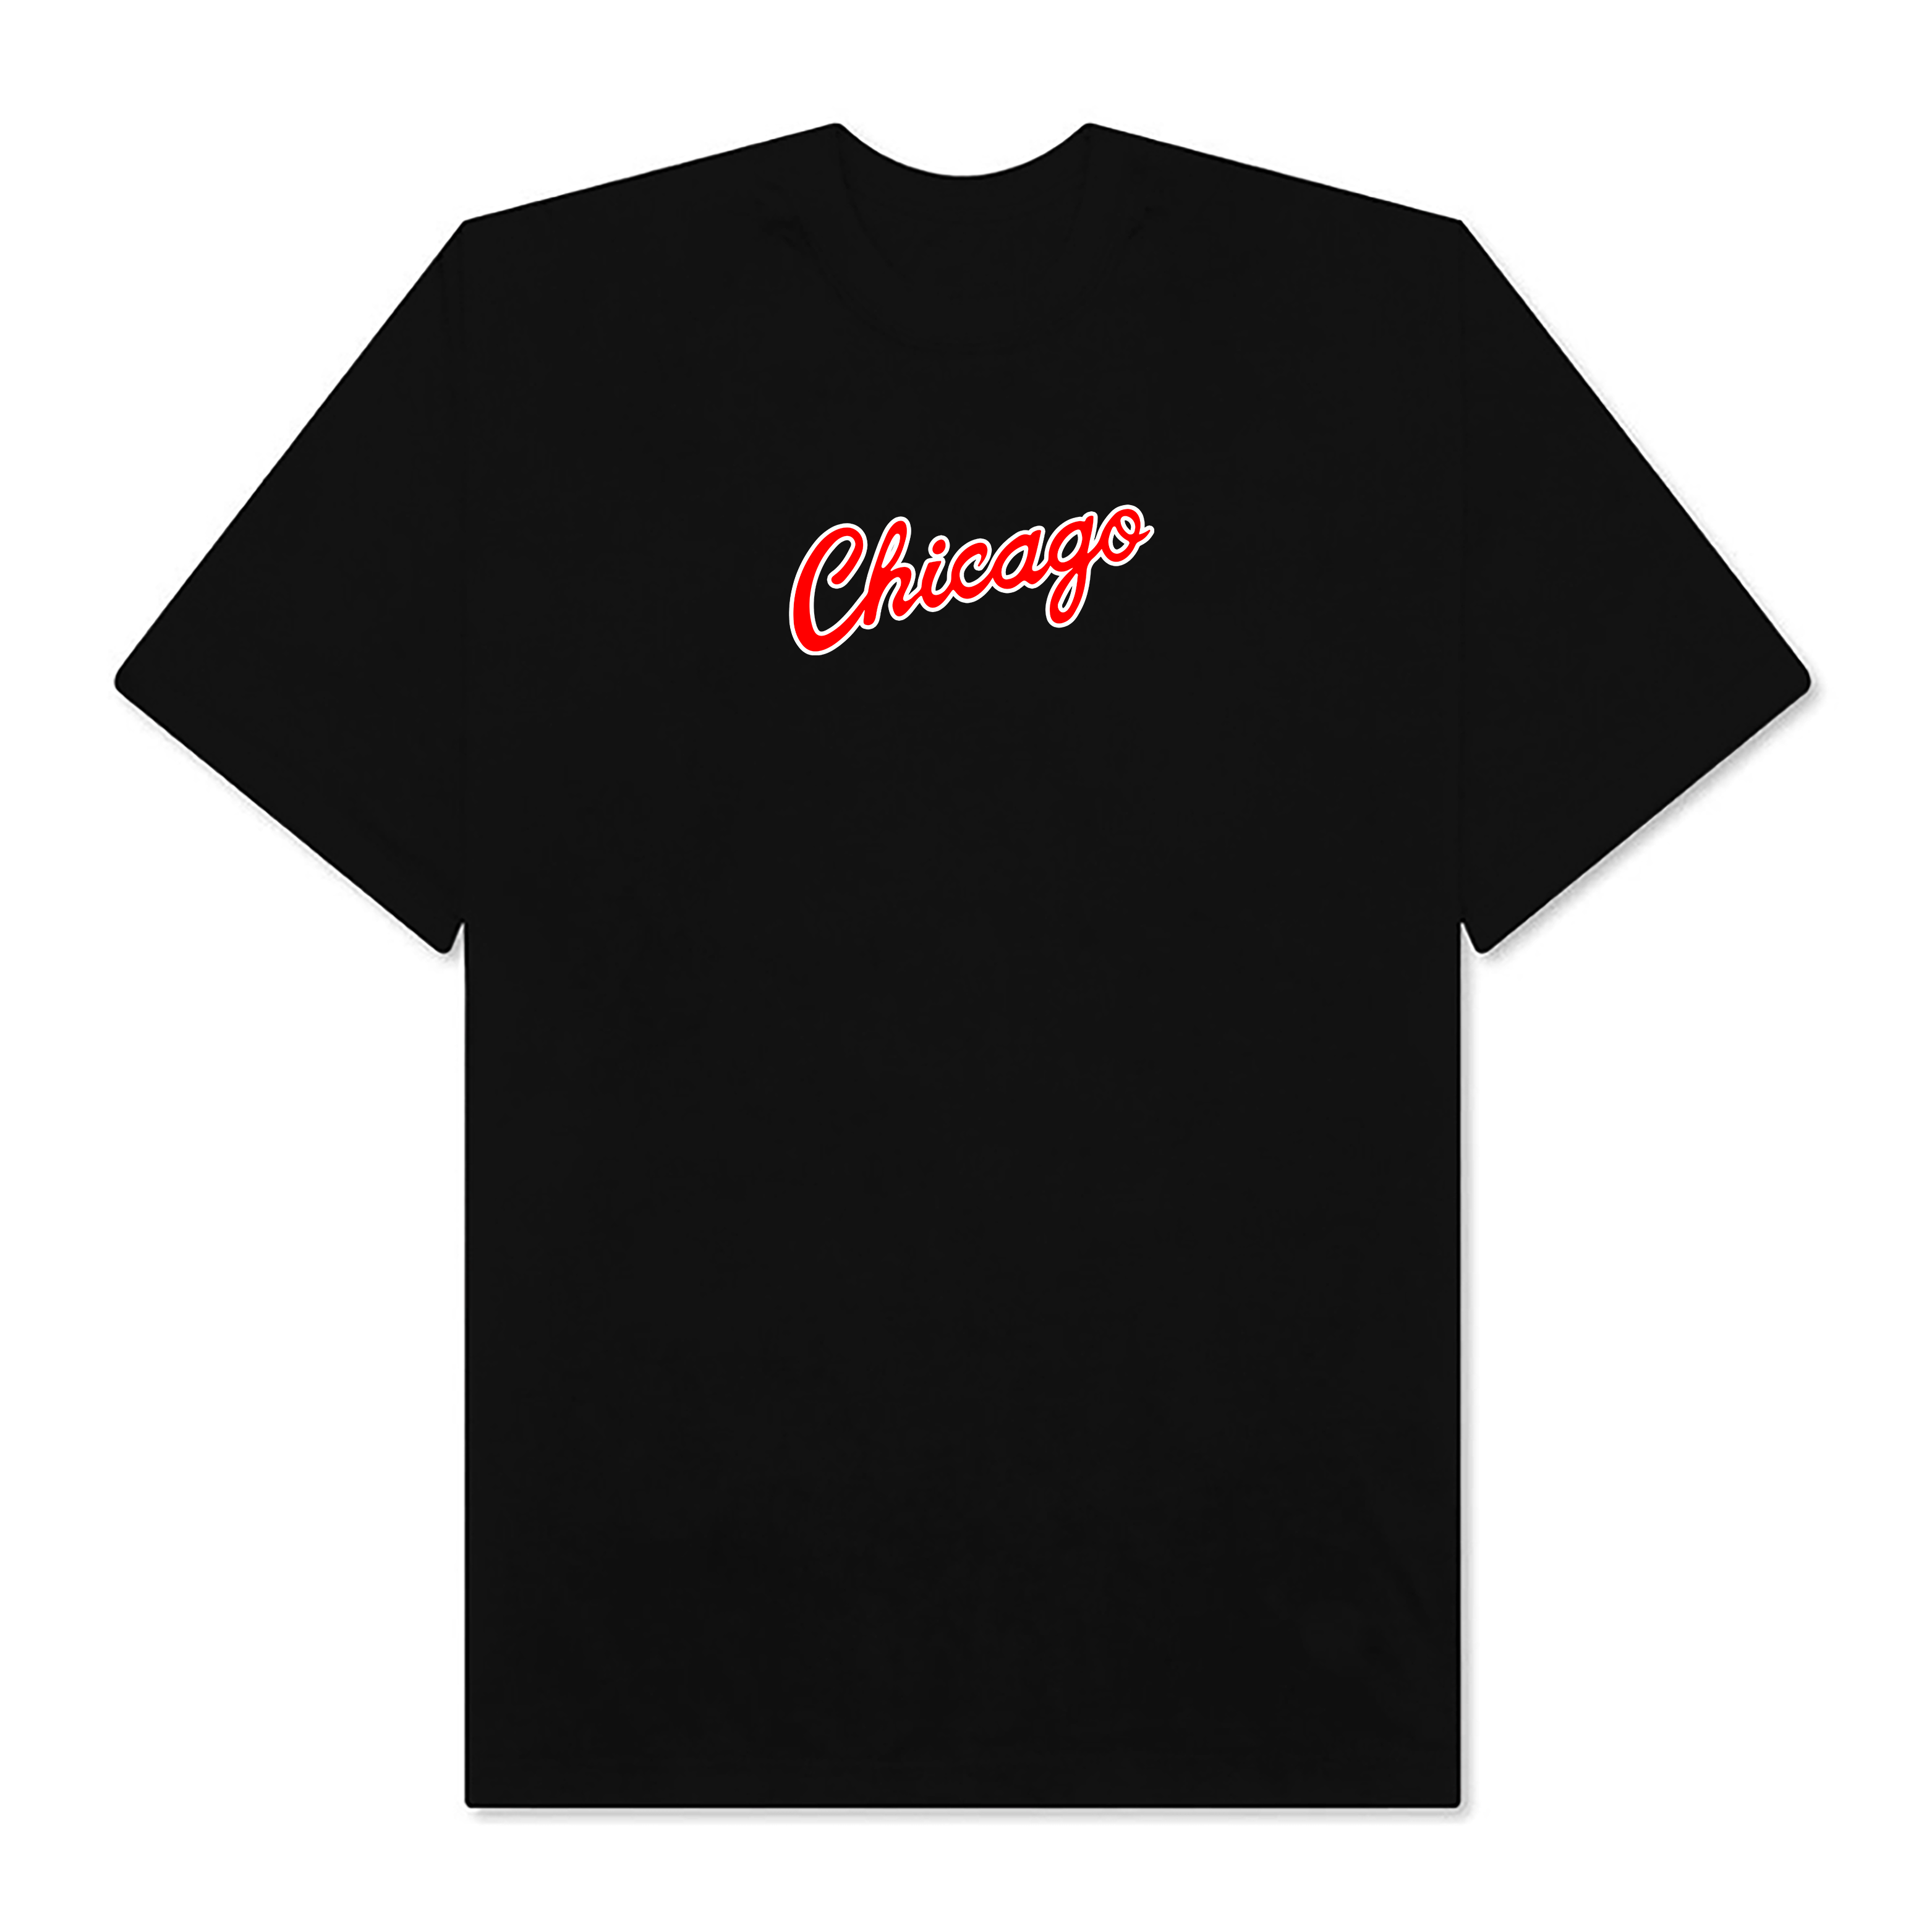 NBA Chicago Bulls Agust D T-Shirt